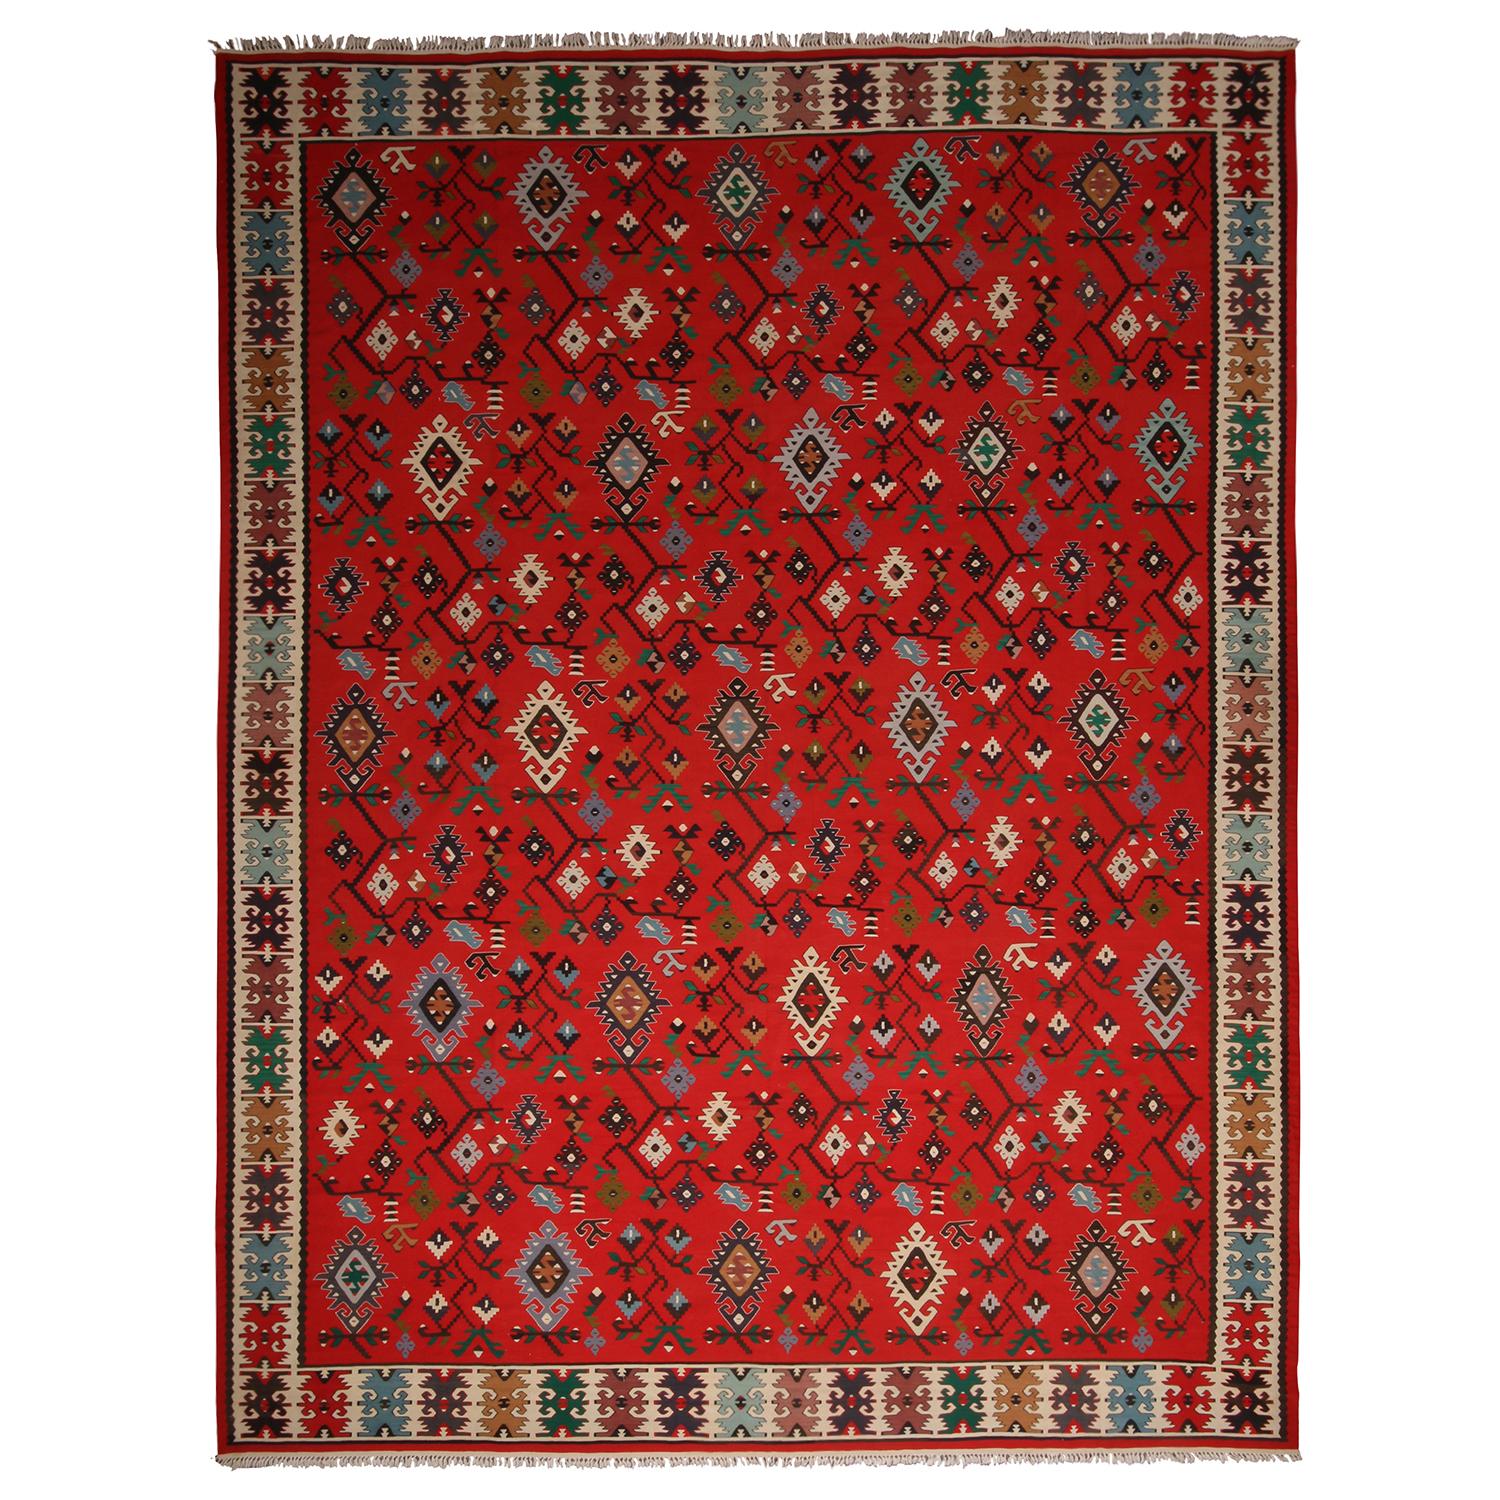 Antiker geometrischer rot-beigefarbener Woll-Kelim-Teppich von Teppich & Kelim